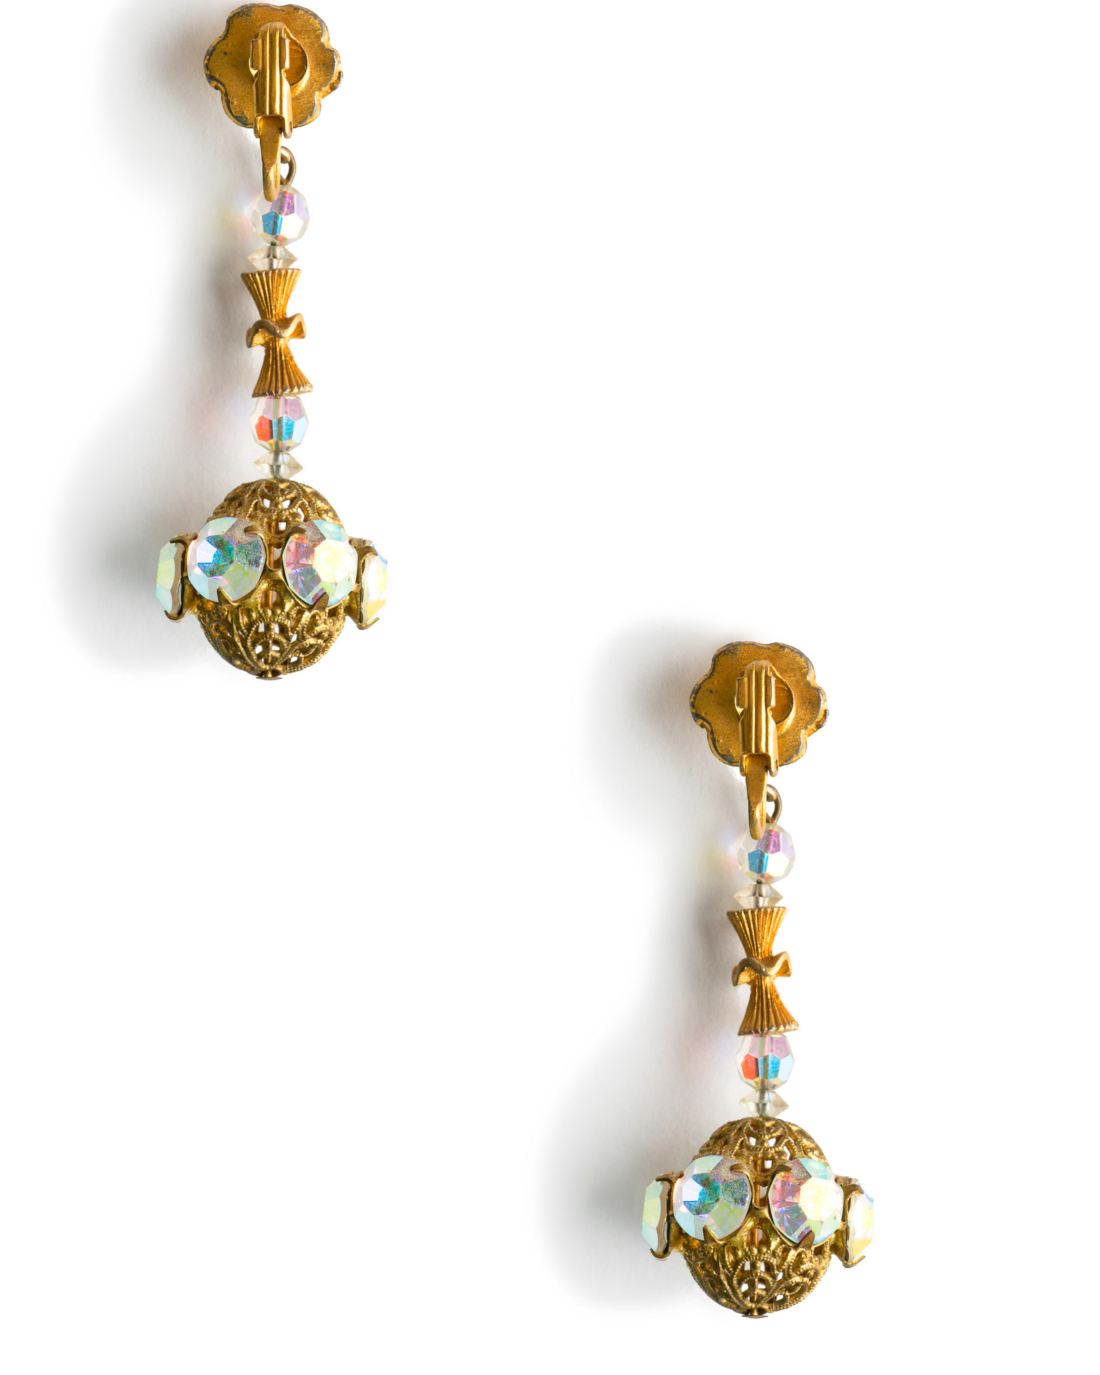 Vintage Mod Golden Sphere Crystal Drop Earrings, circa 1960's